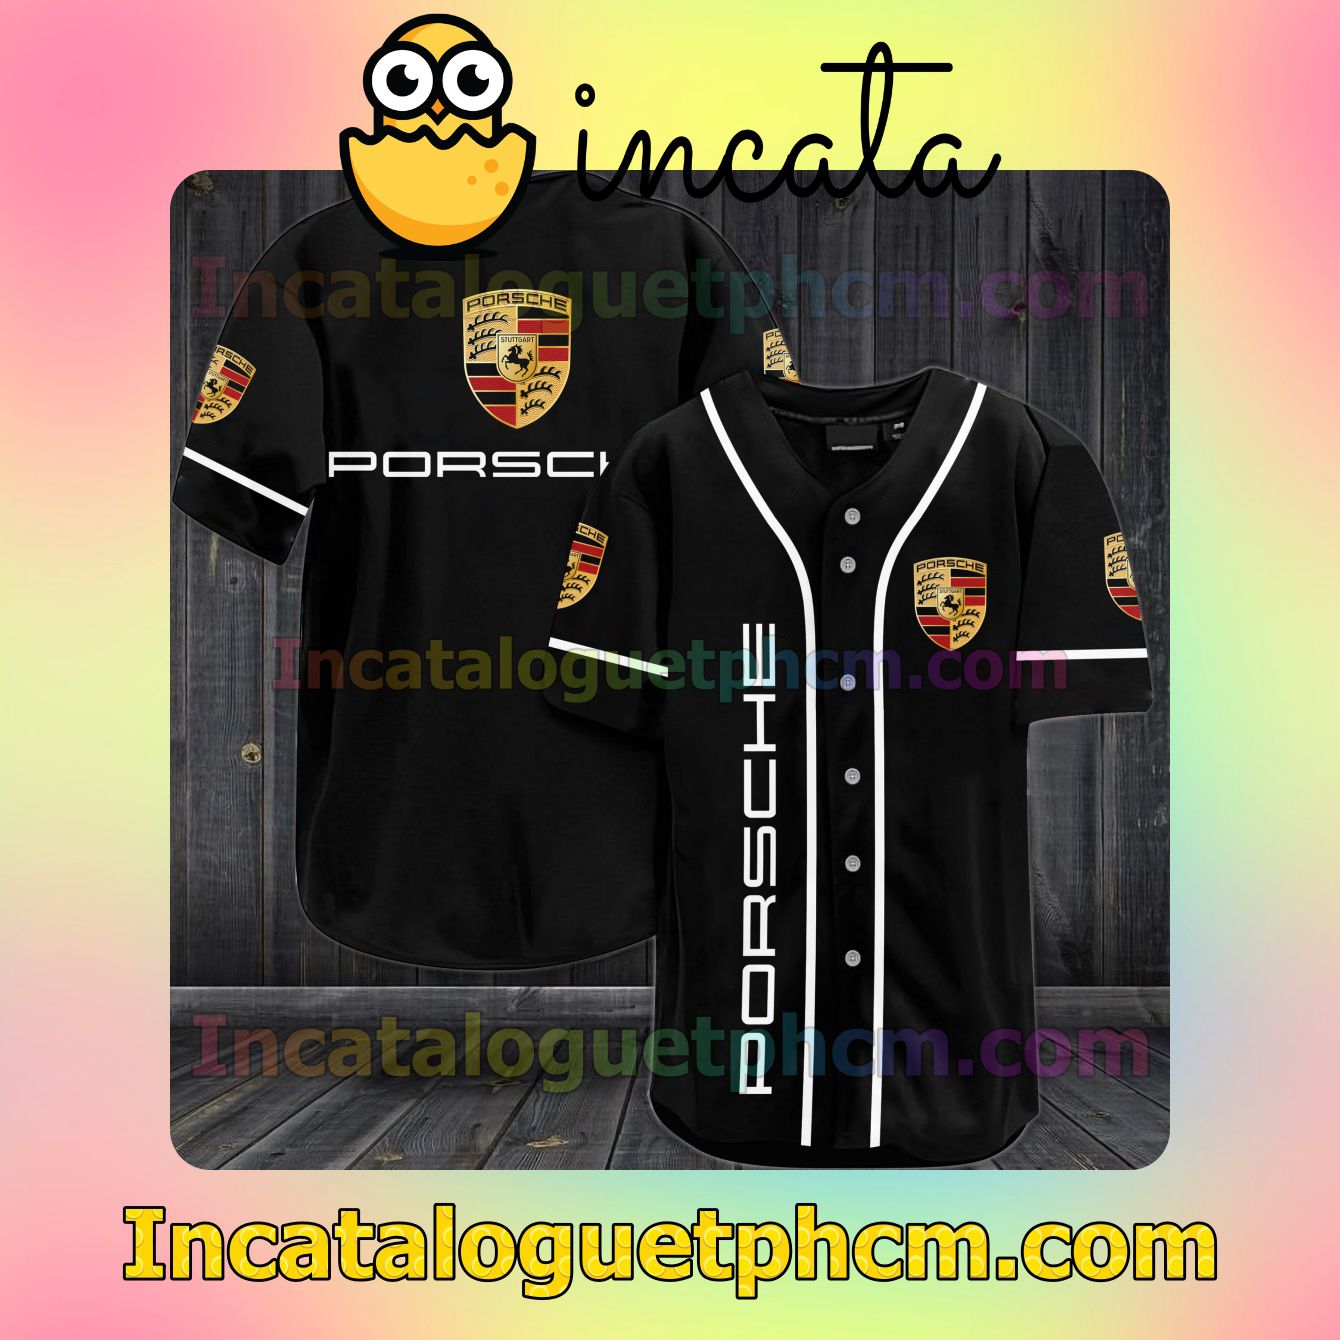 Get Here Porsche Baseball Jersey Shirt